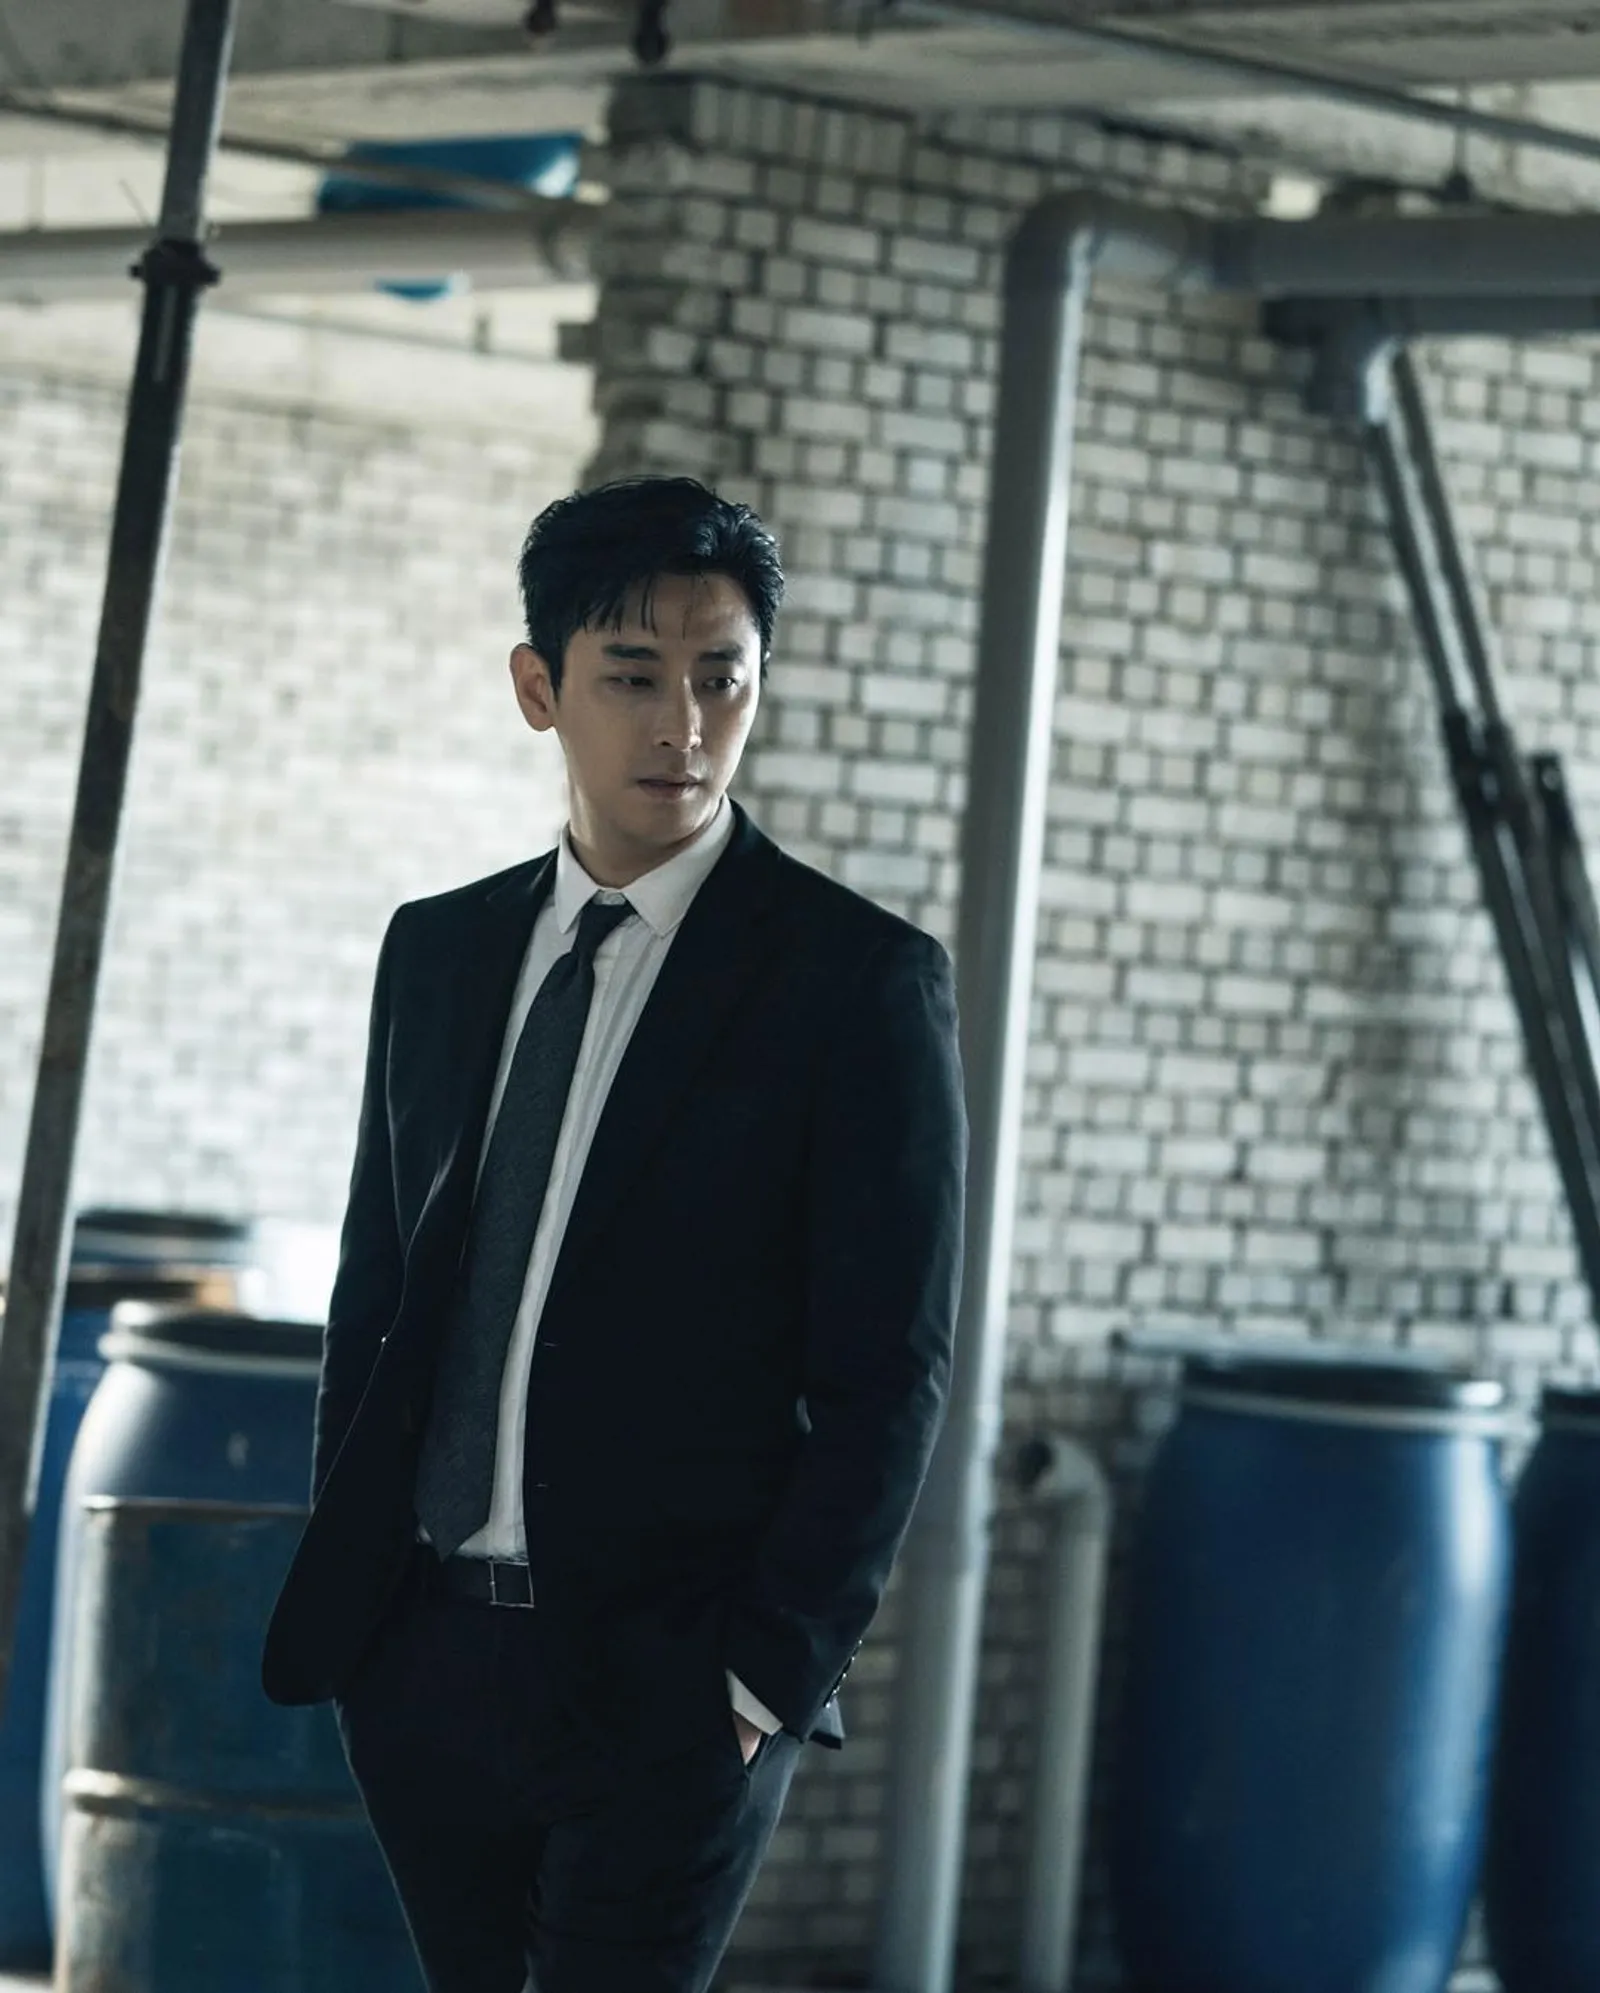 Terpapar di Film 'Hunt', Aktor Joo Ji Hoon Dinyatakan Negatif COVID-19